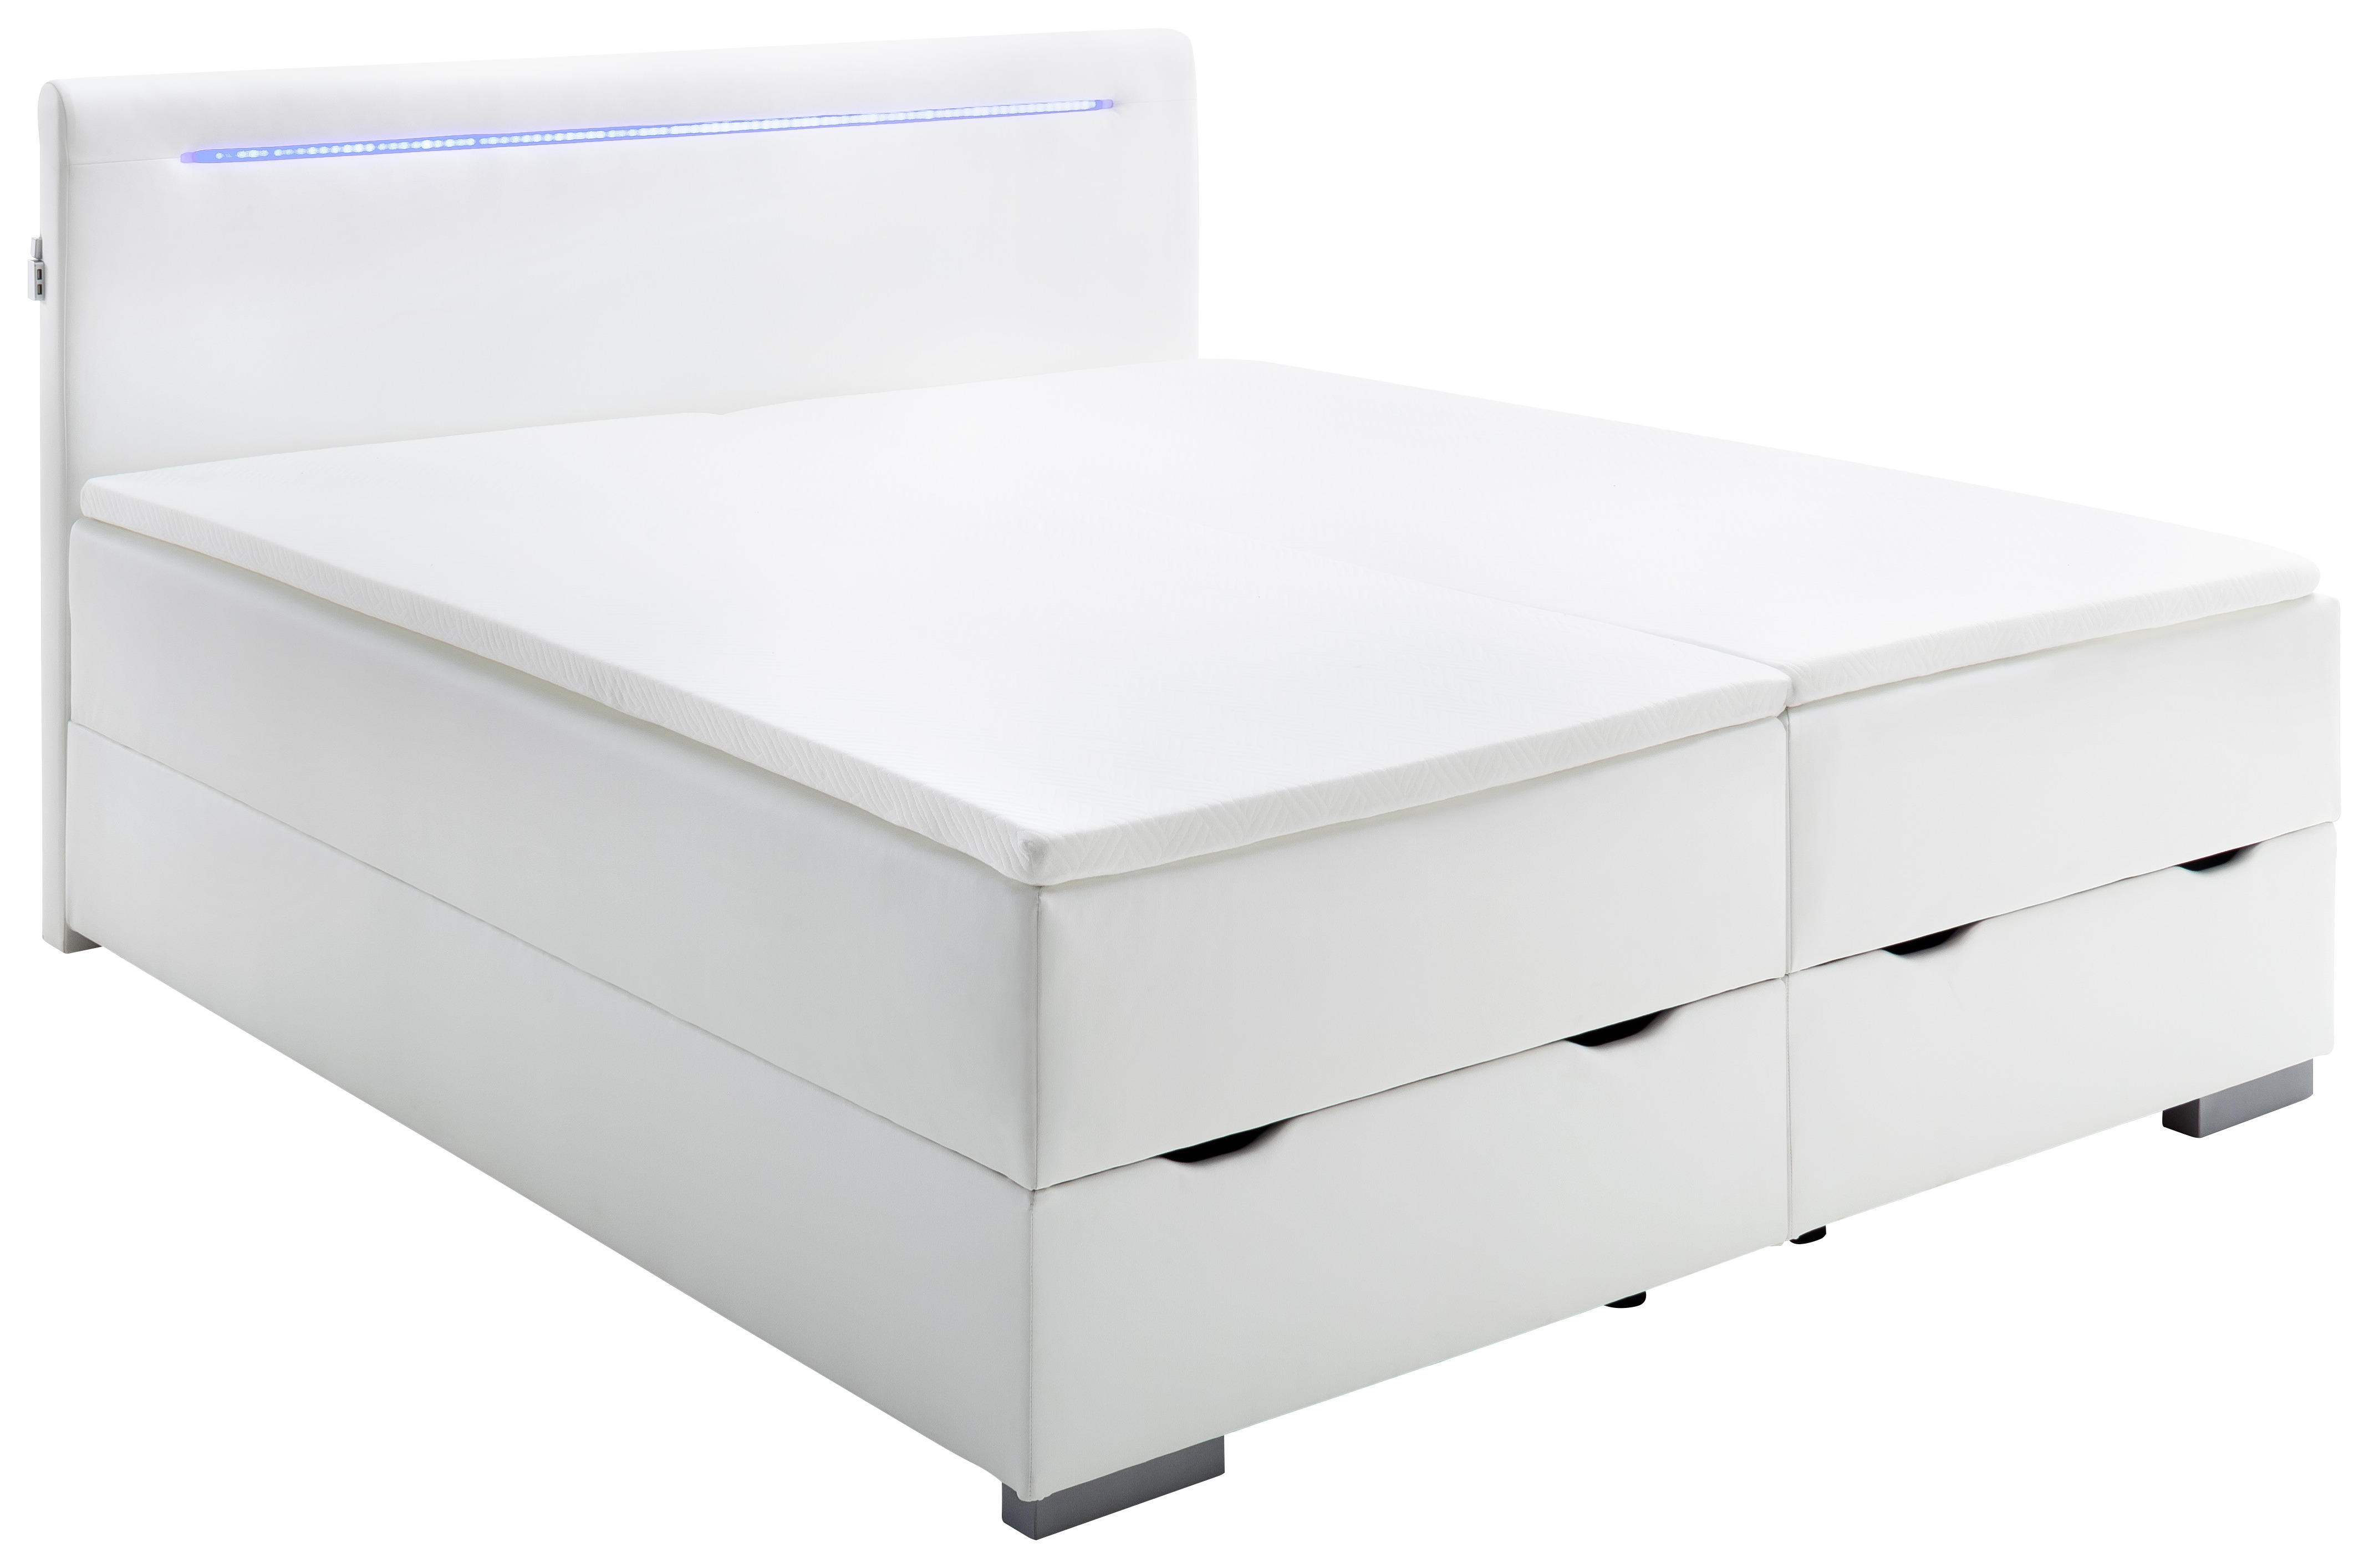 BOXSPRINGBETT 180/200 cm  in Weiß  - Silberfarben/Weiß, MODERN, Kunststoff/Textil (180/200cm) - Livetastic